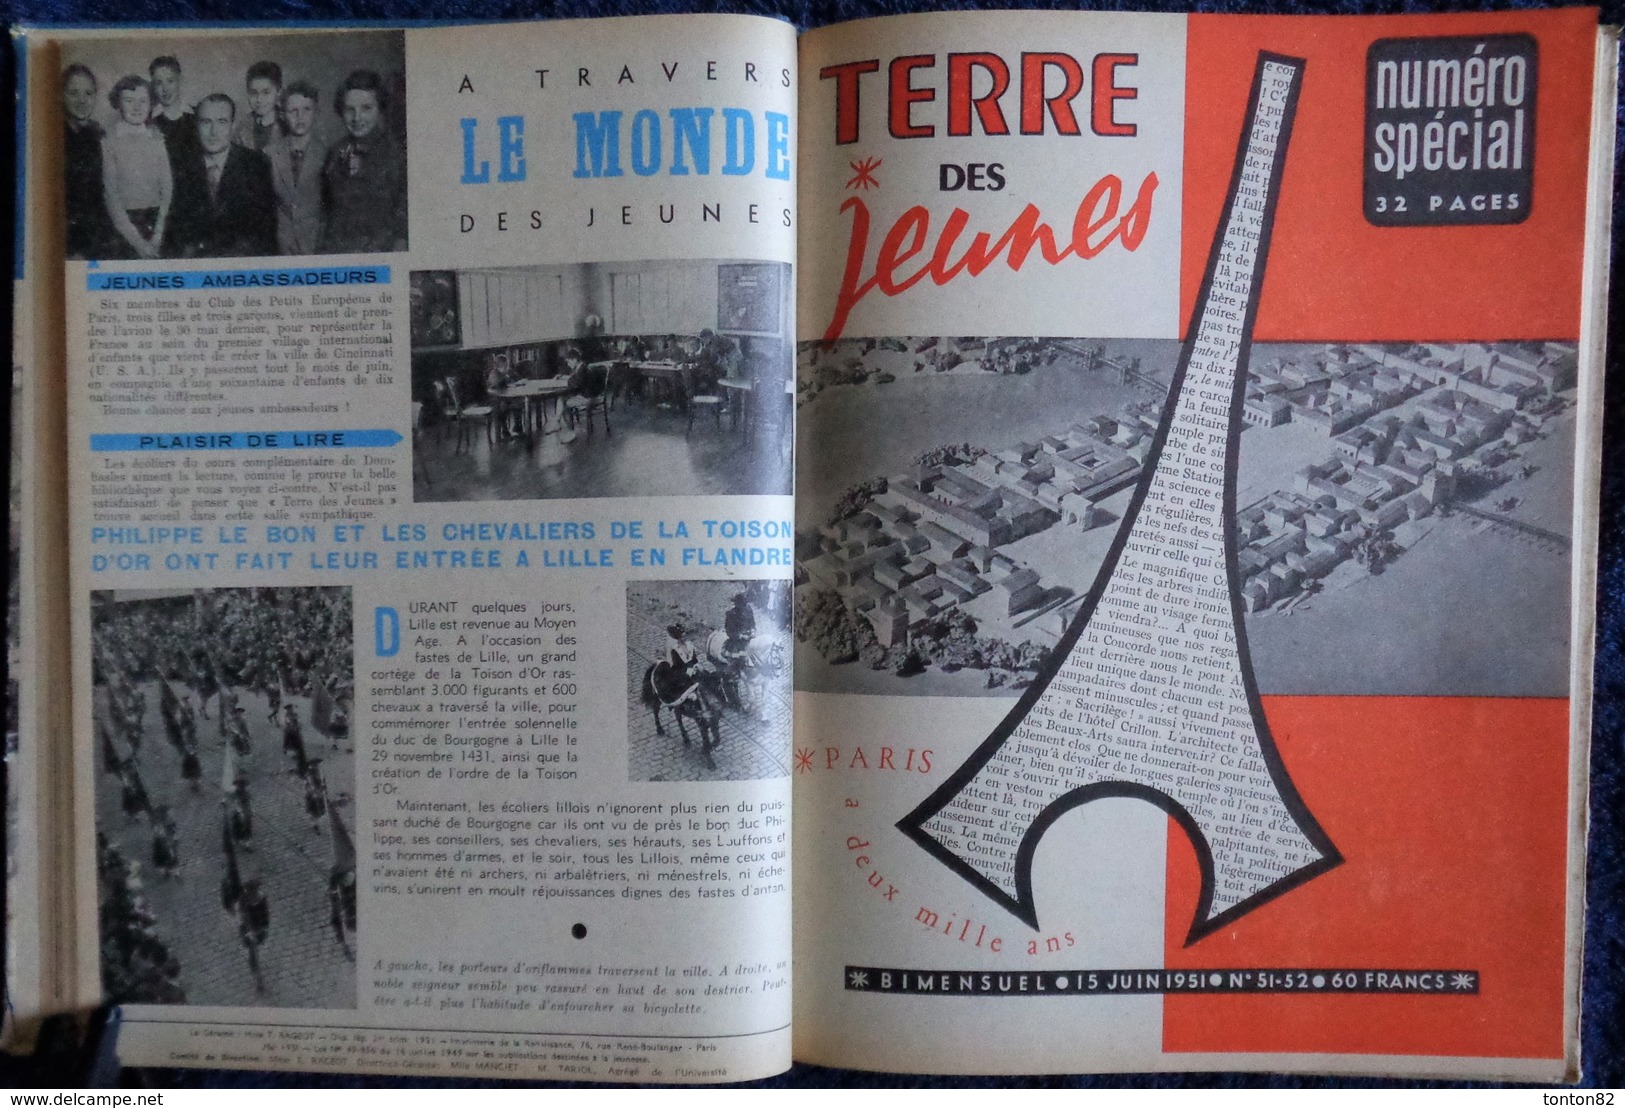 Terre des Jeunes - Album N° III - ( 1951 ) .